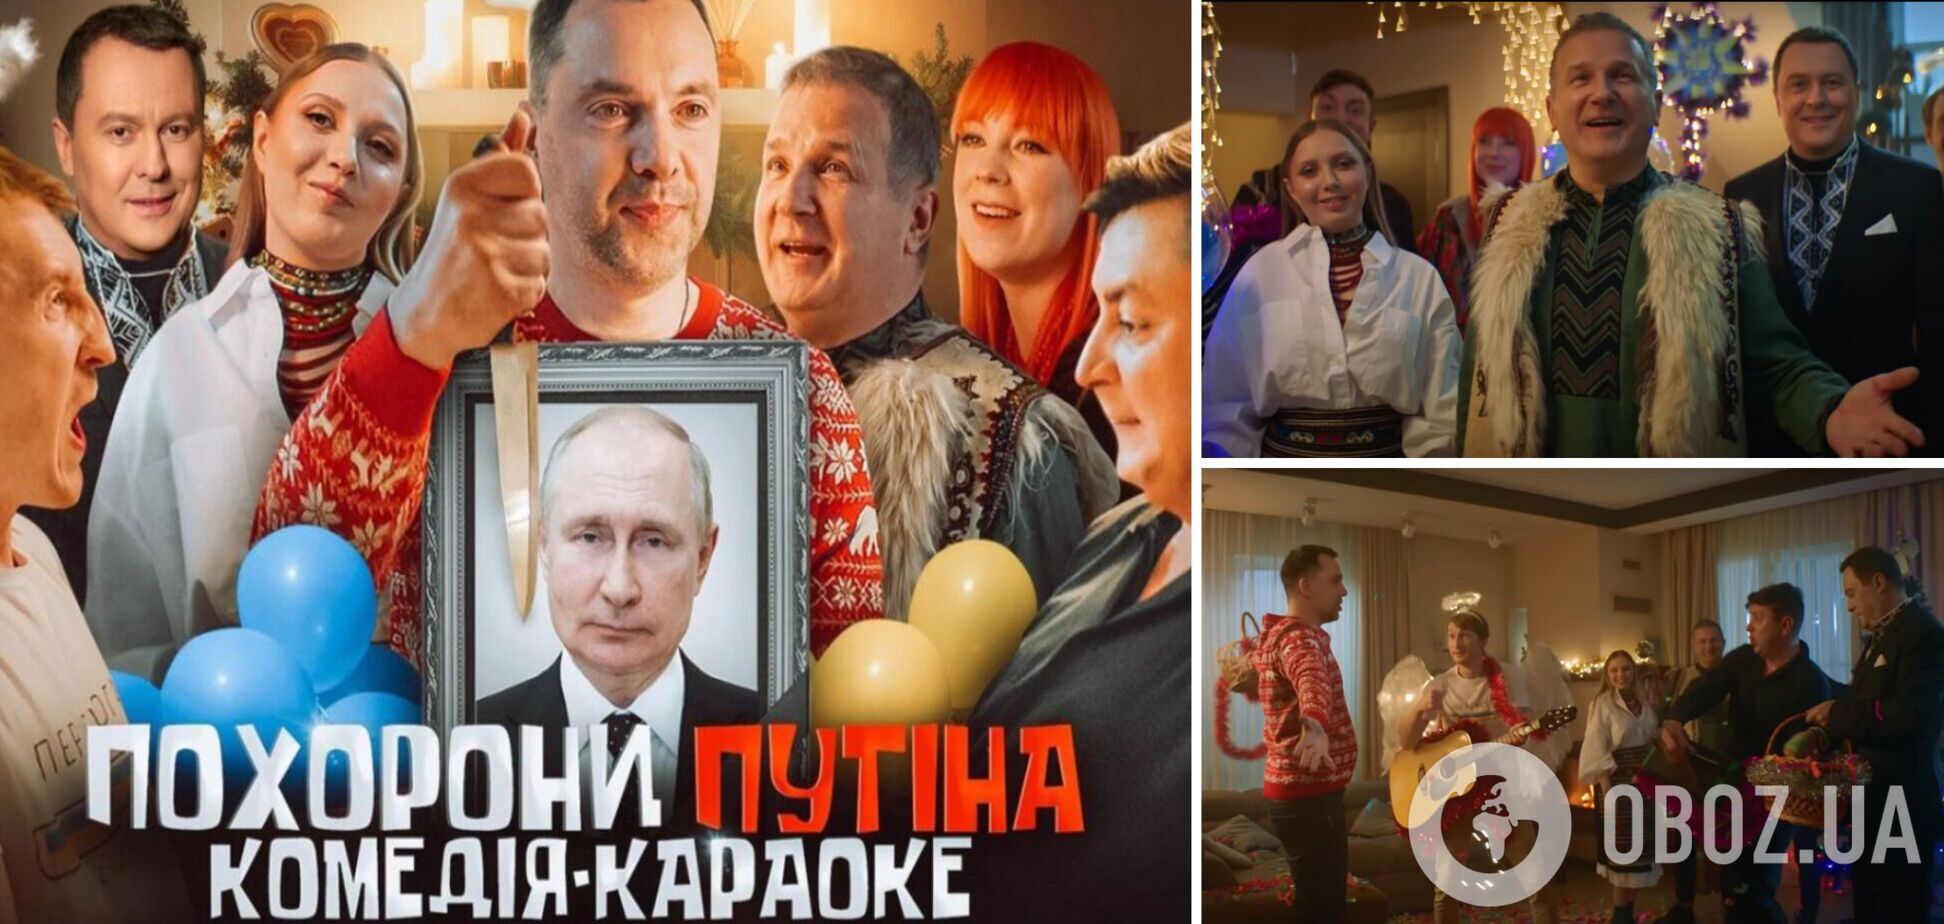 Юрій Горбунов представив тизер нового проєкту 'Похорони путіна':  цей день настав, святкують всі! Відео  